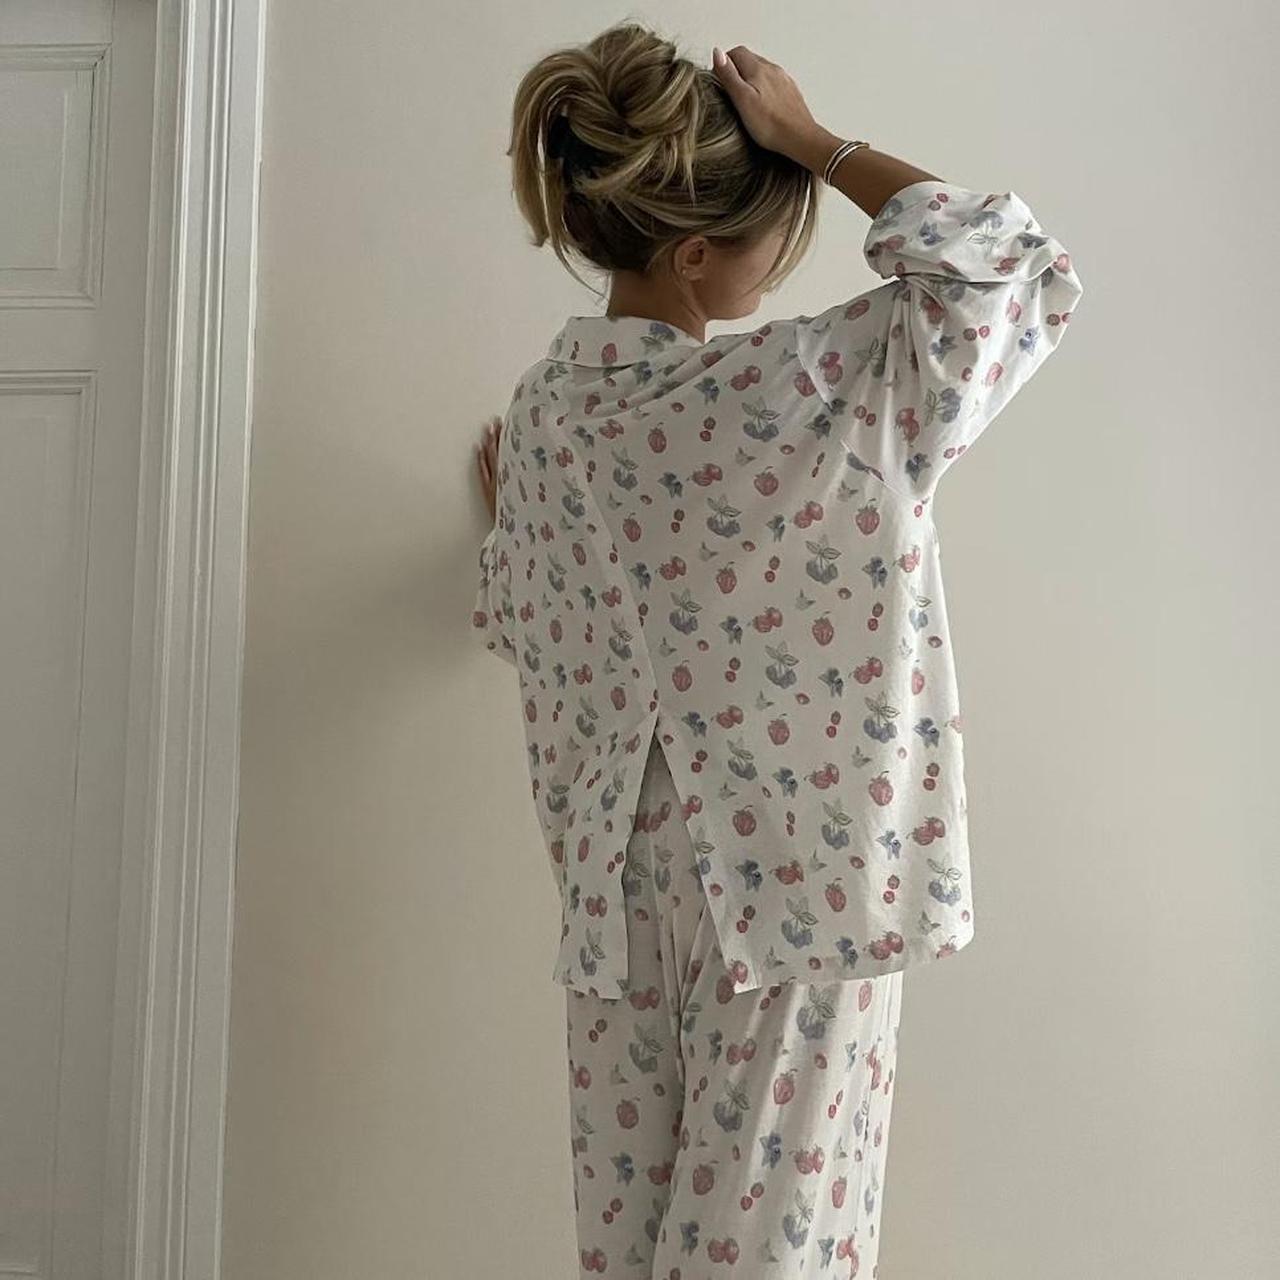 Djerf Avenue Women's Pajamas (2)